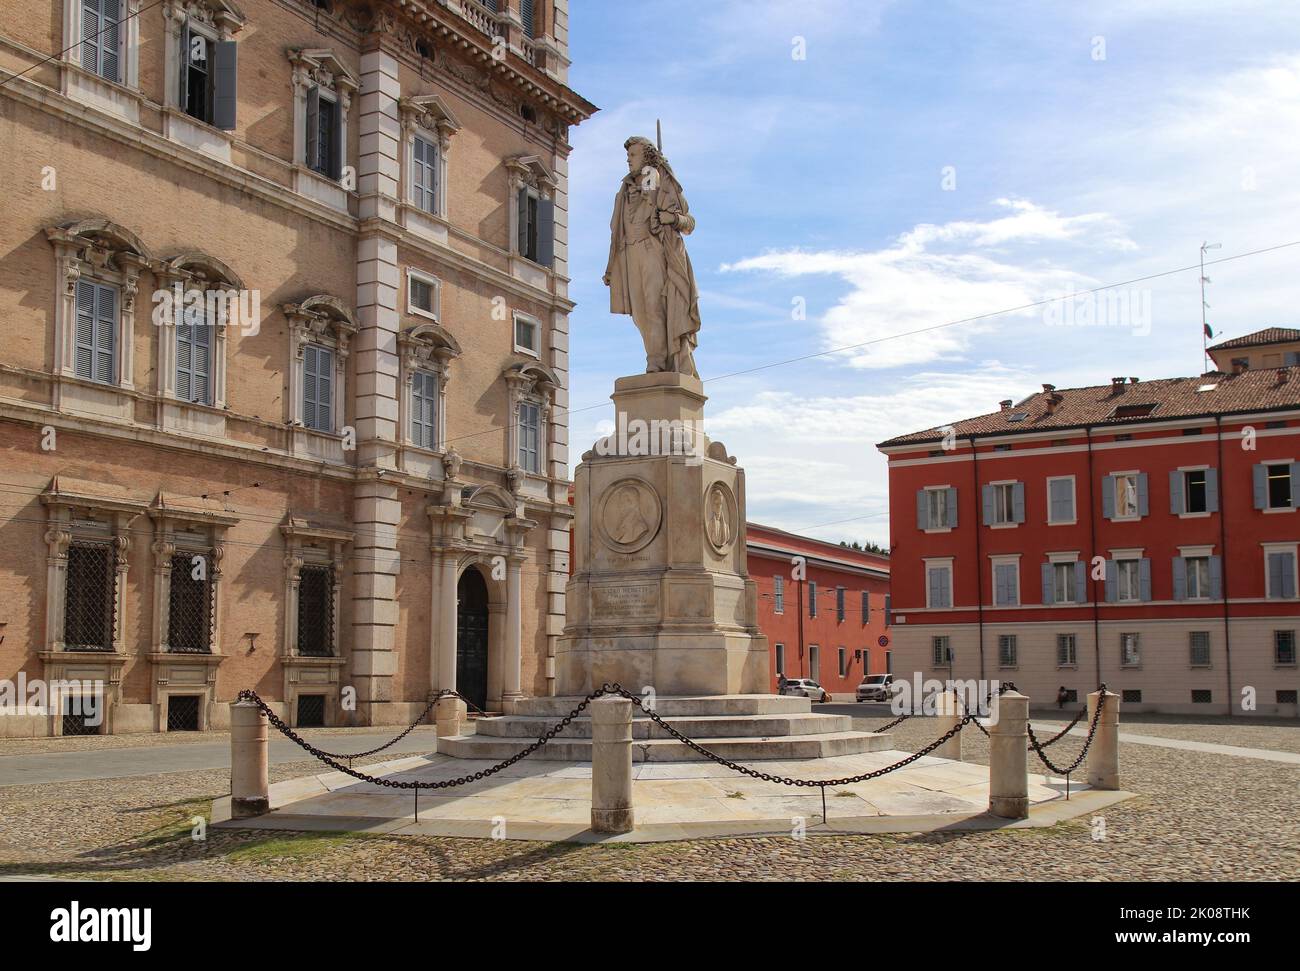 Monument à Ciro Menotti sur la Piazza Roma (place de Rome), ville de Modène, Italie, place touristique Banque D'Images